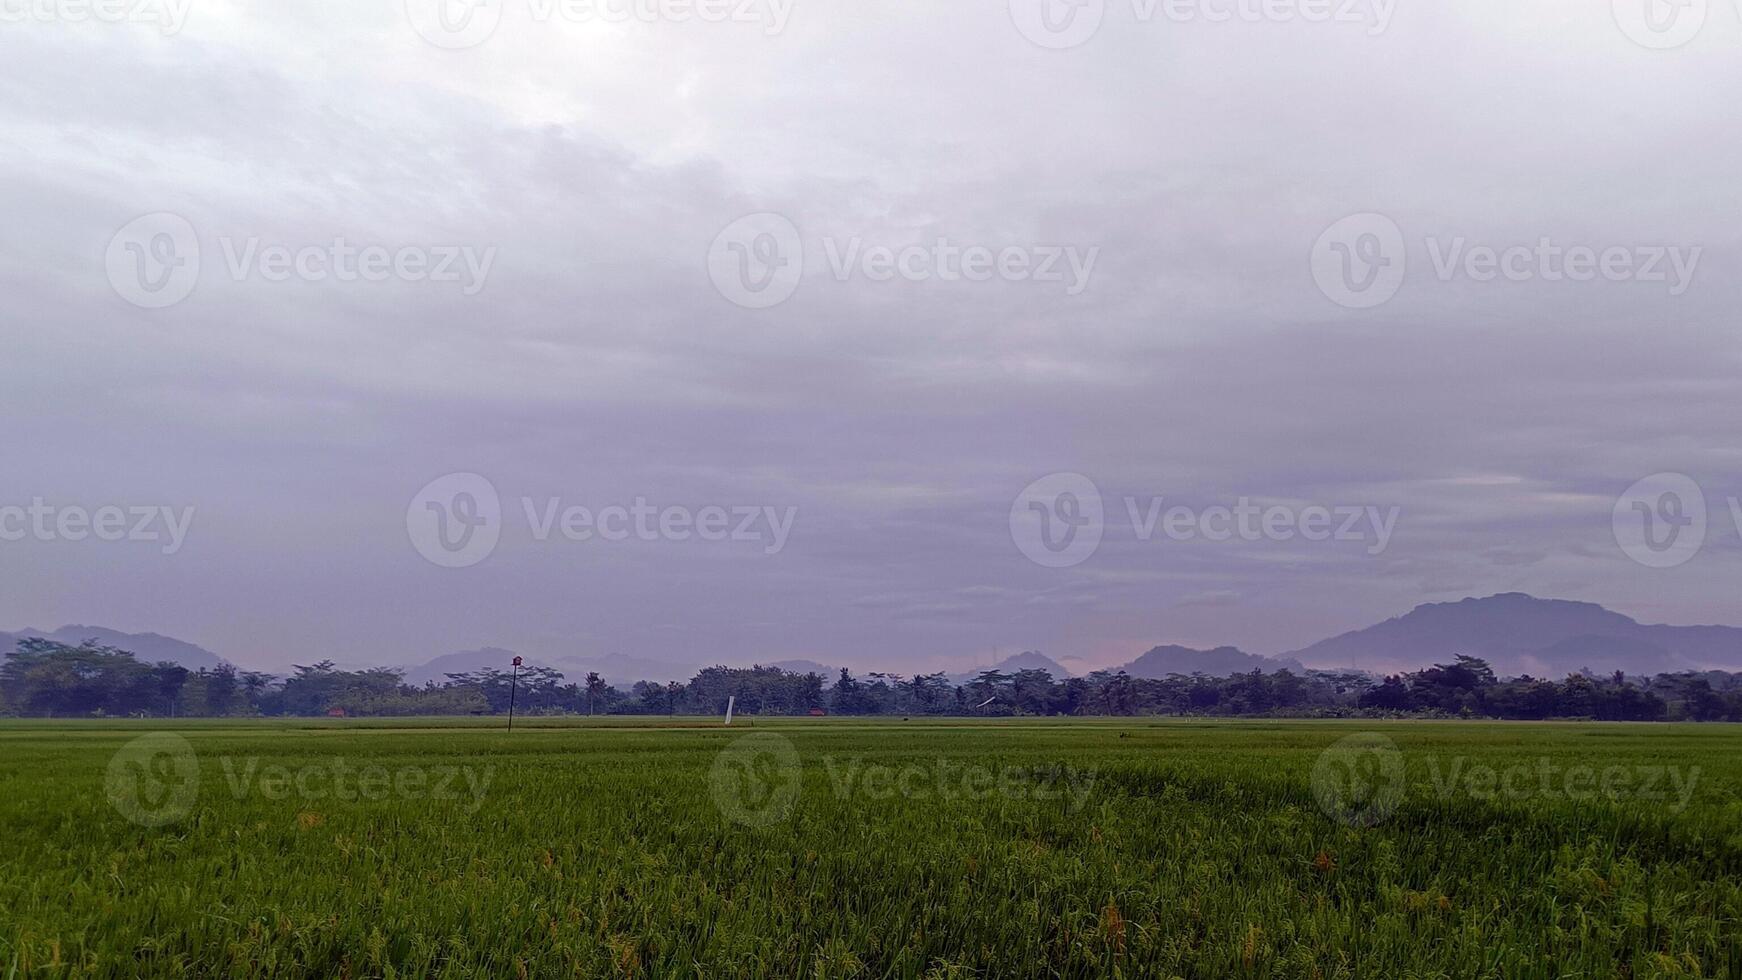 Visualizza di verde riso i campi con un' strada affiancato di riso i campi e circondato di colline foto